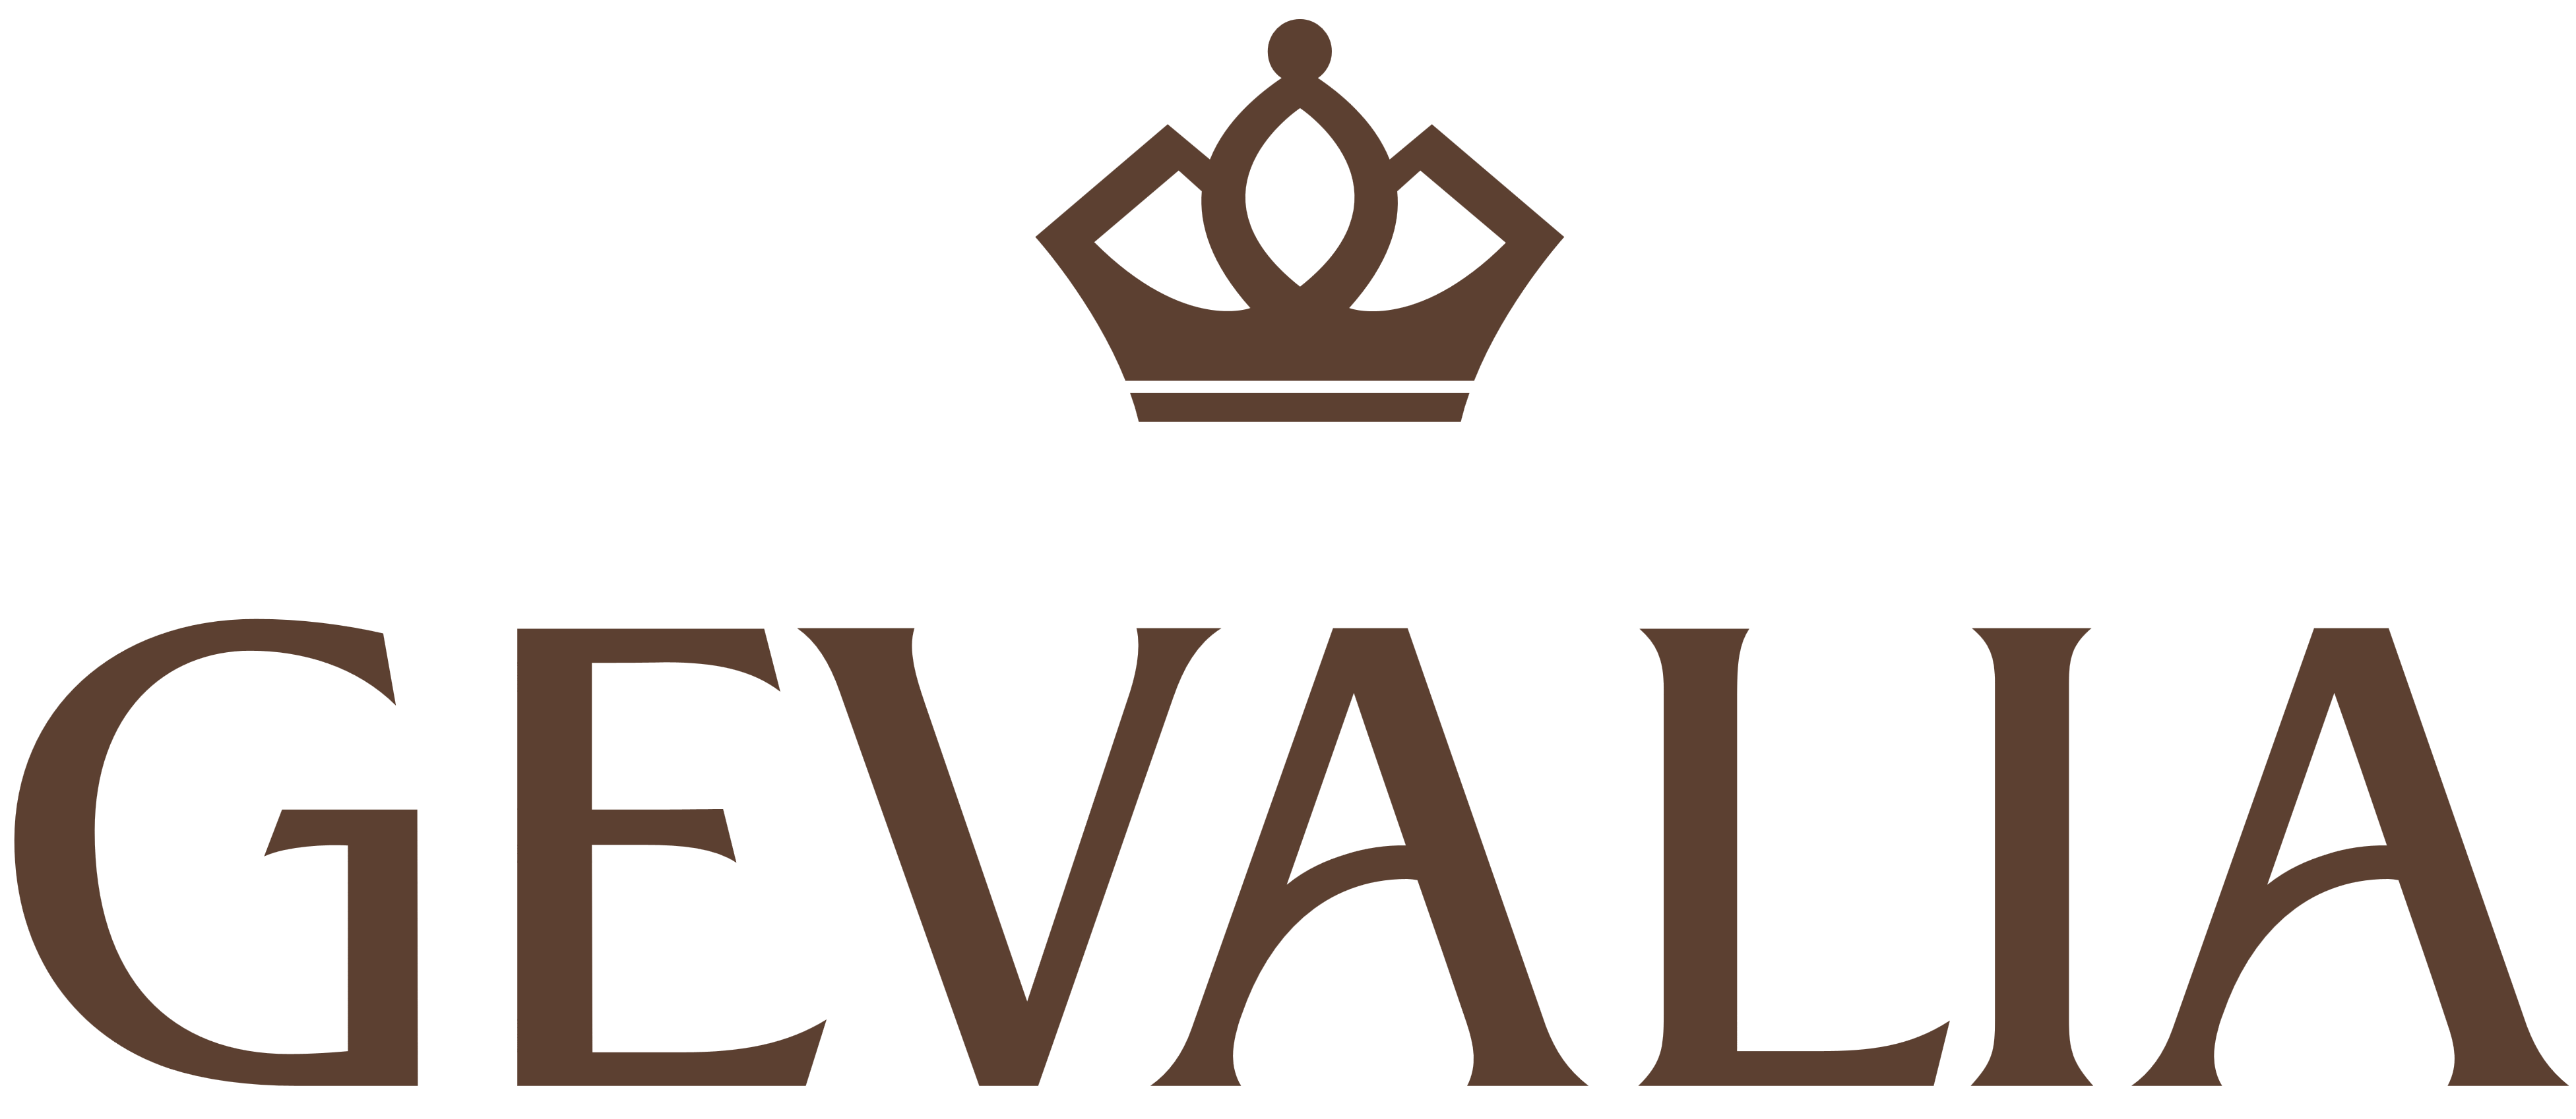 Gevalia Logo - Gevalia – Logos Download